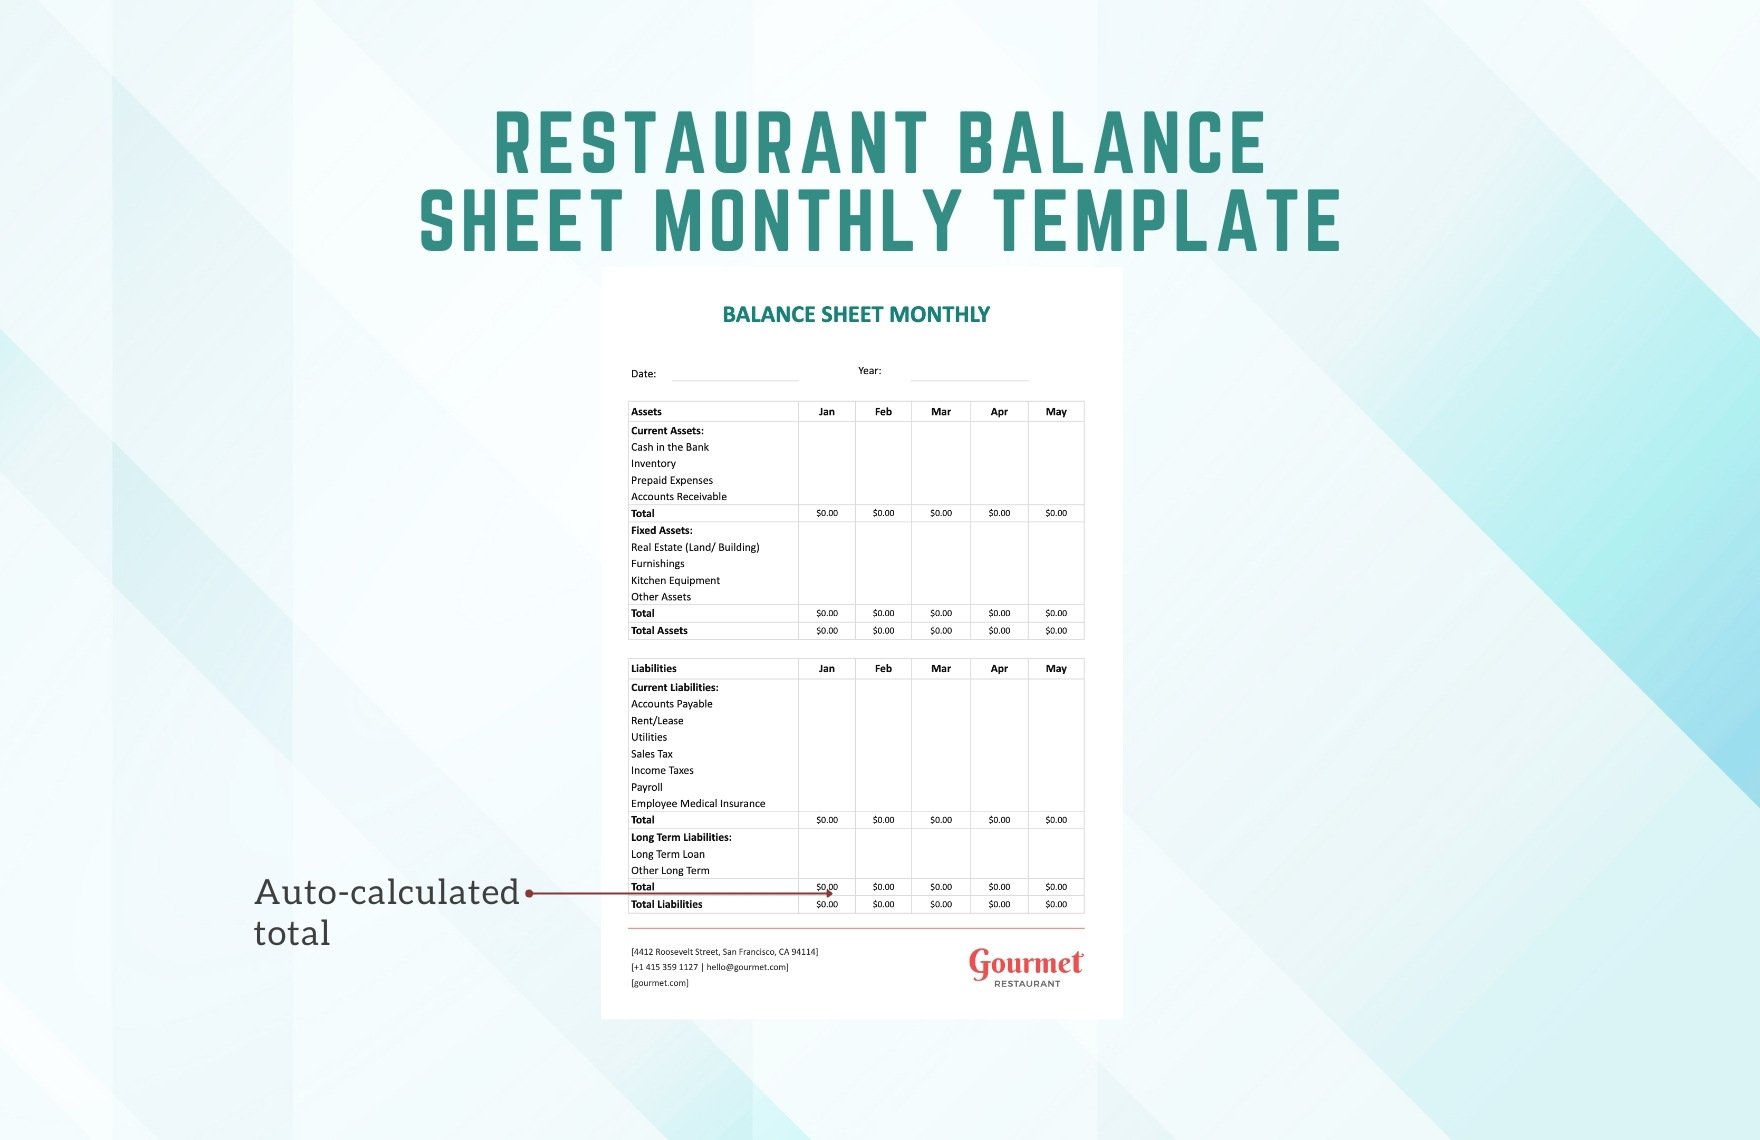 Restaurant Balance Sheet Monthly Template